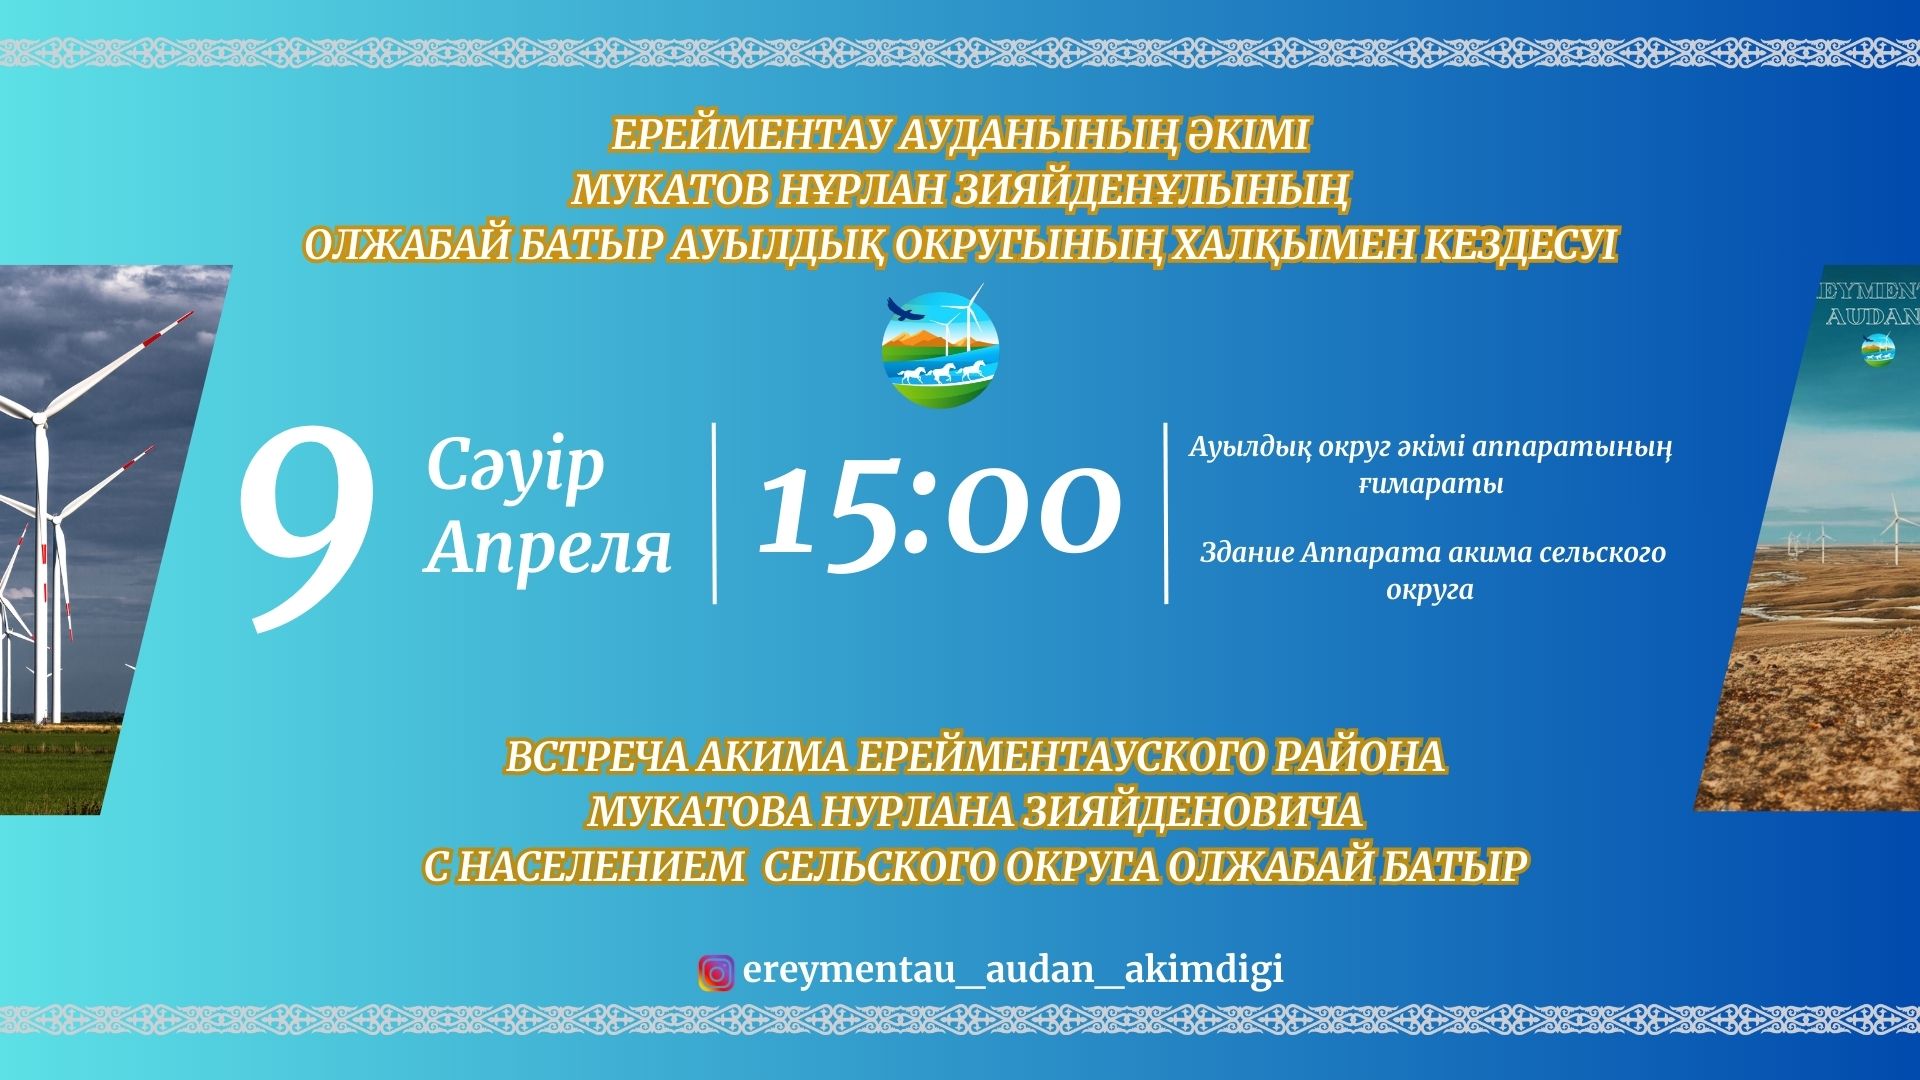 Состоится встреча акима Ерейментауского района Мукатова Нурлана Зияйденовича с населением сельского округа Олжабай батыр.